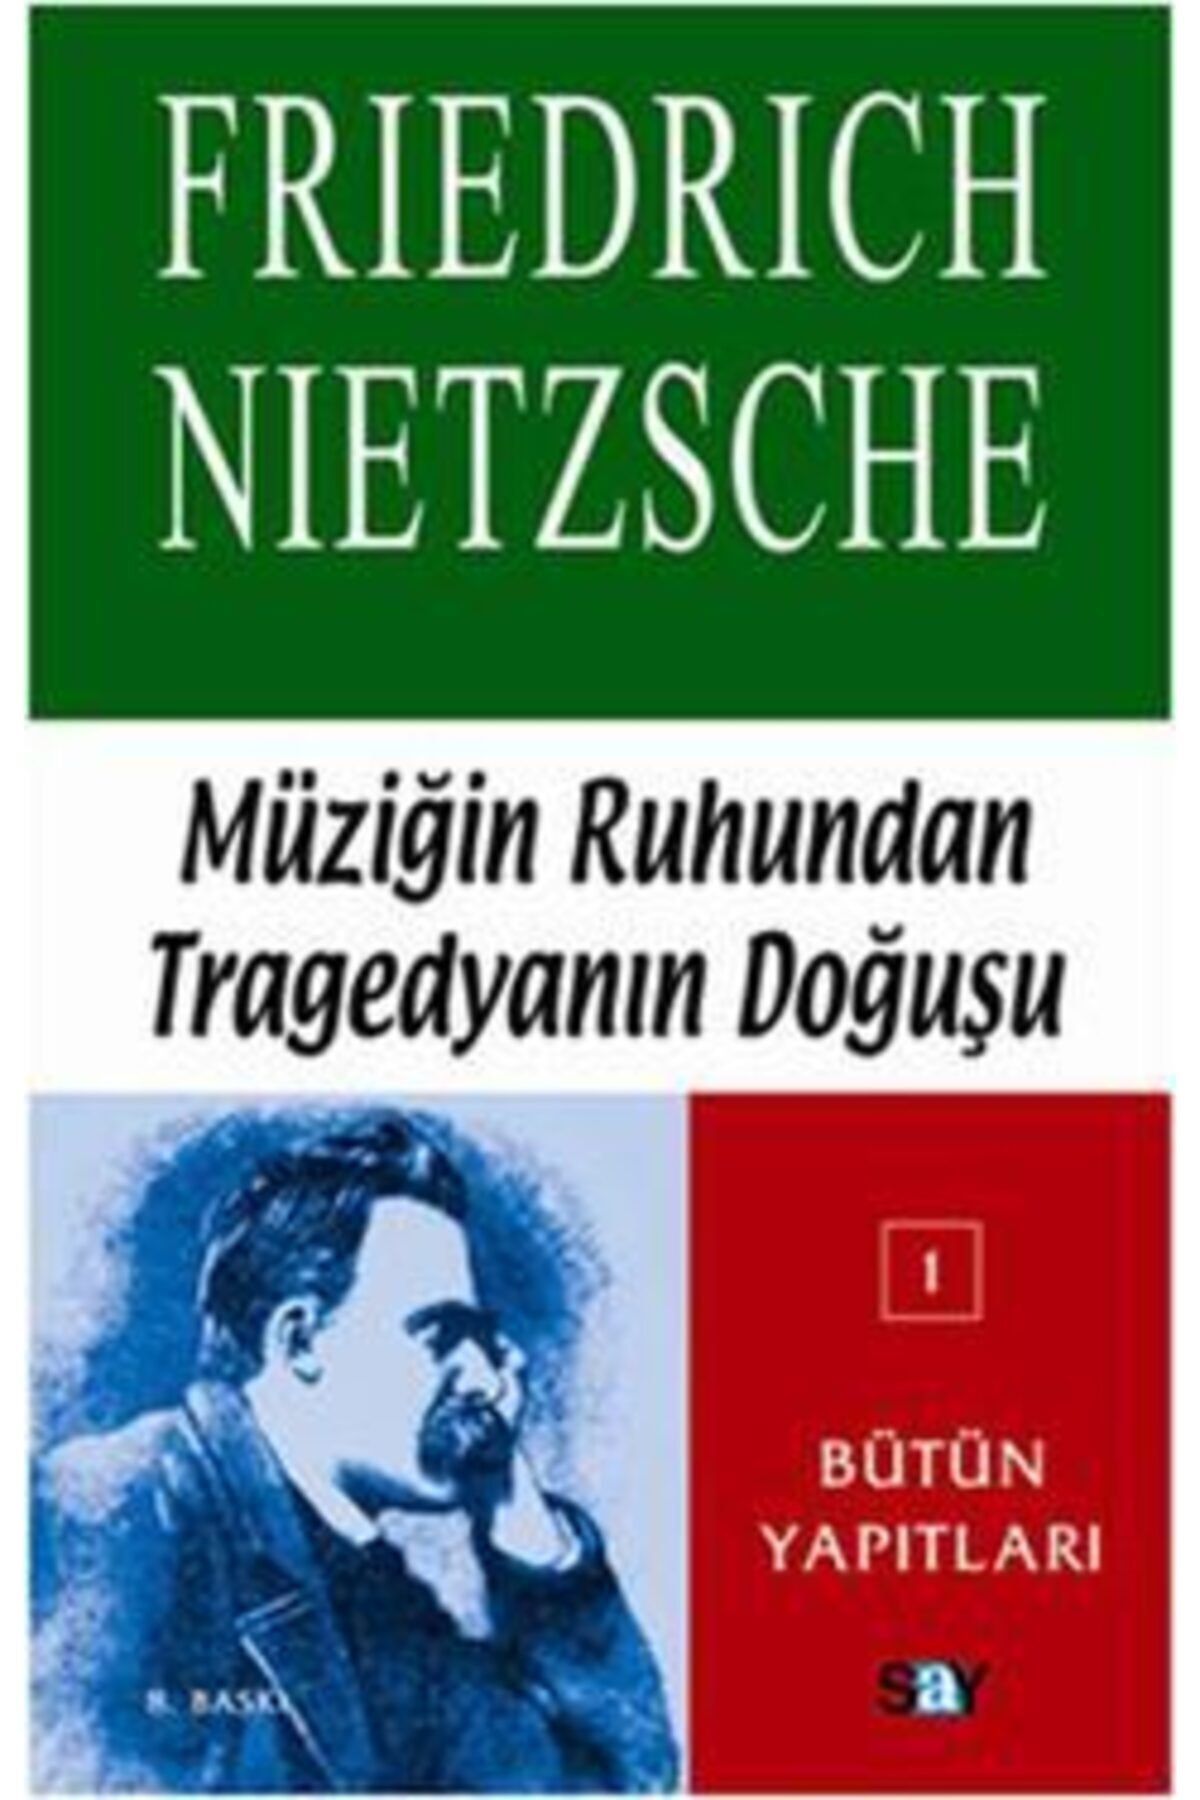 Say Yayınları Müziğin Ruhundan Tragedyanın Doğuşu /friedrich Wilhelm Nietzsche /